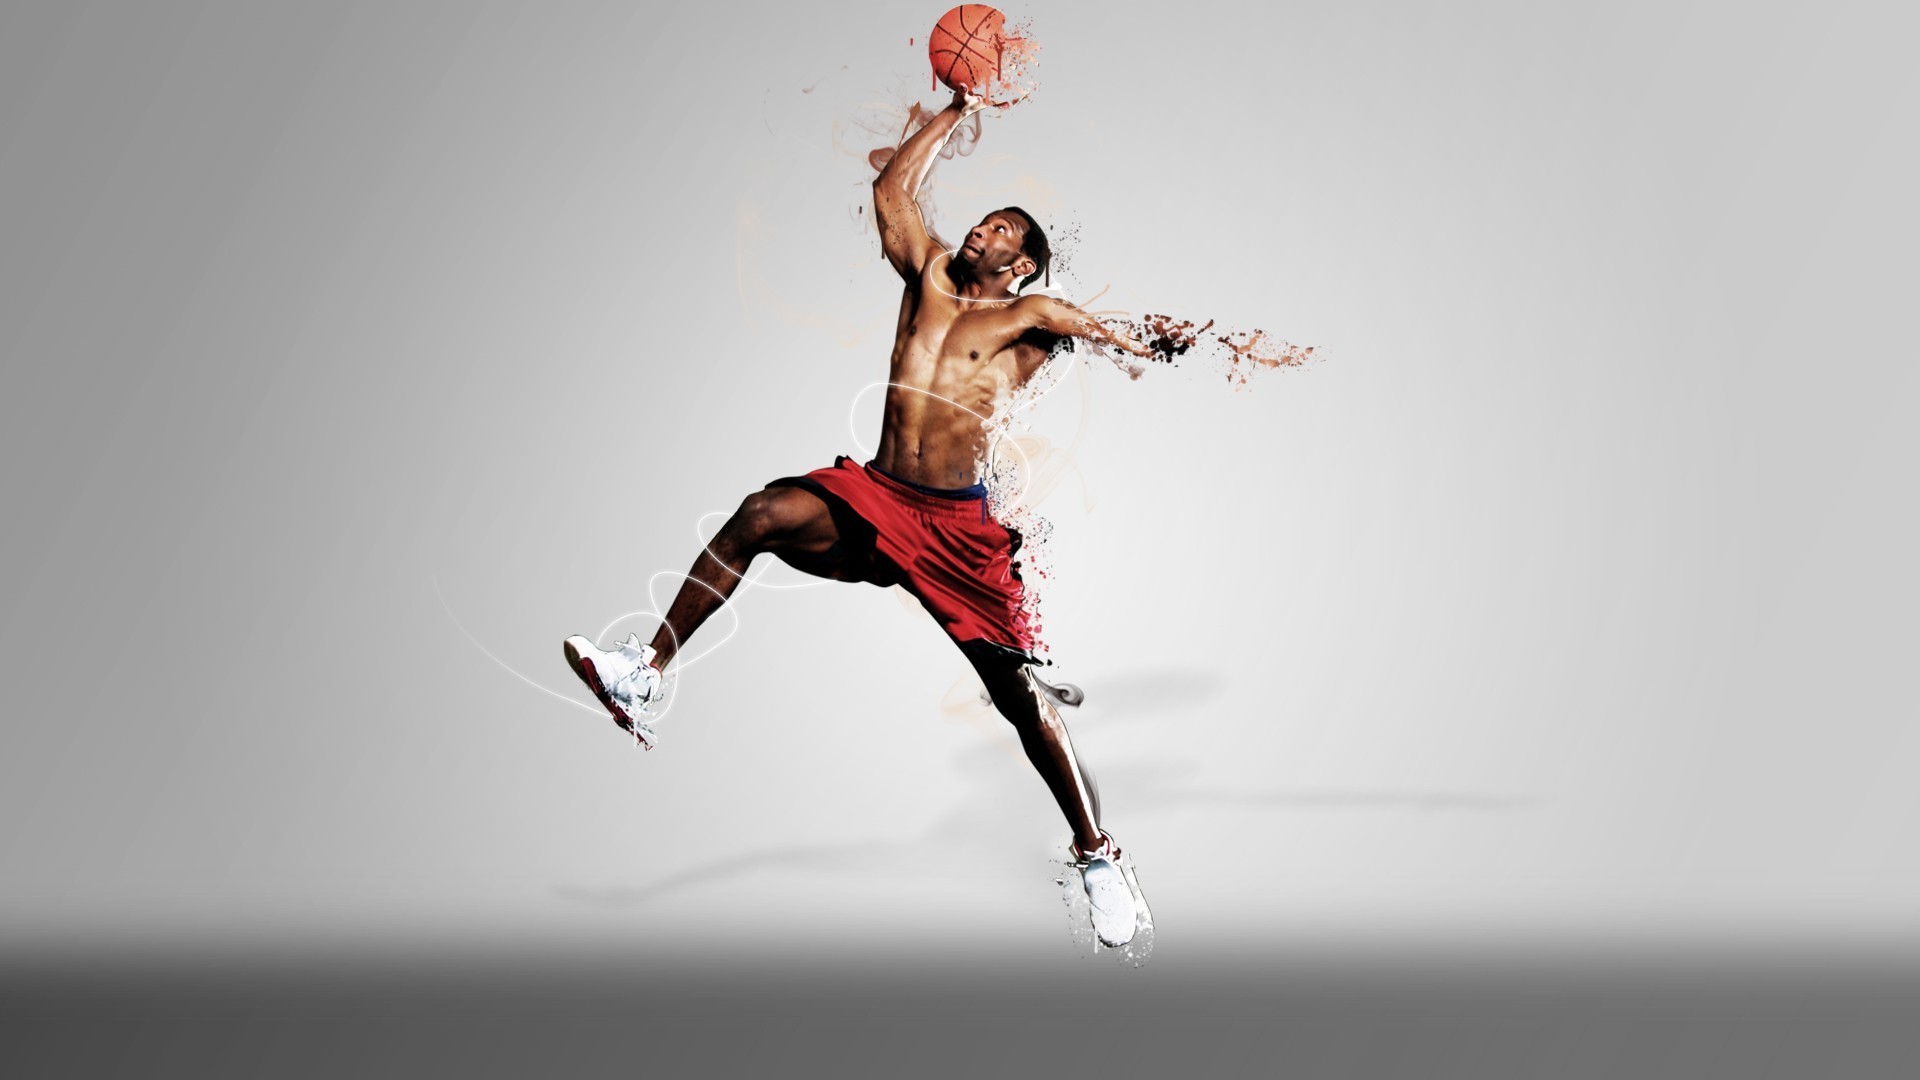 Basketball Player Wallpaper | Sport Wallpapper Image